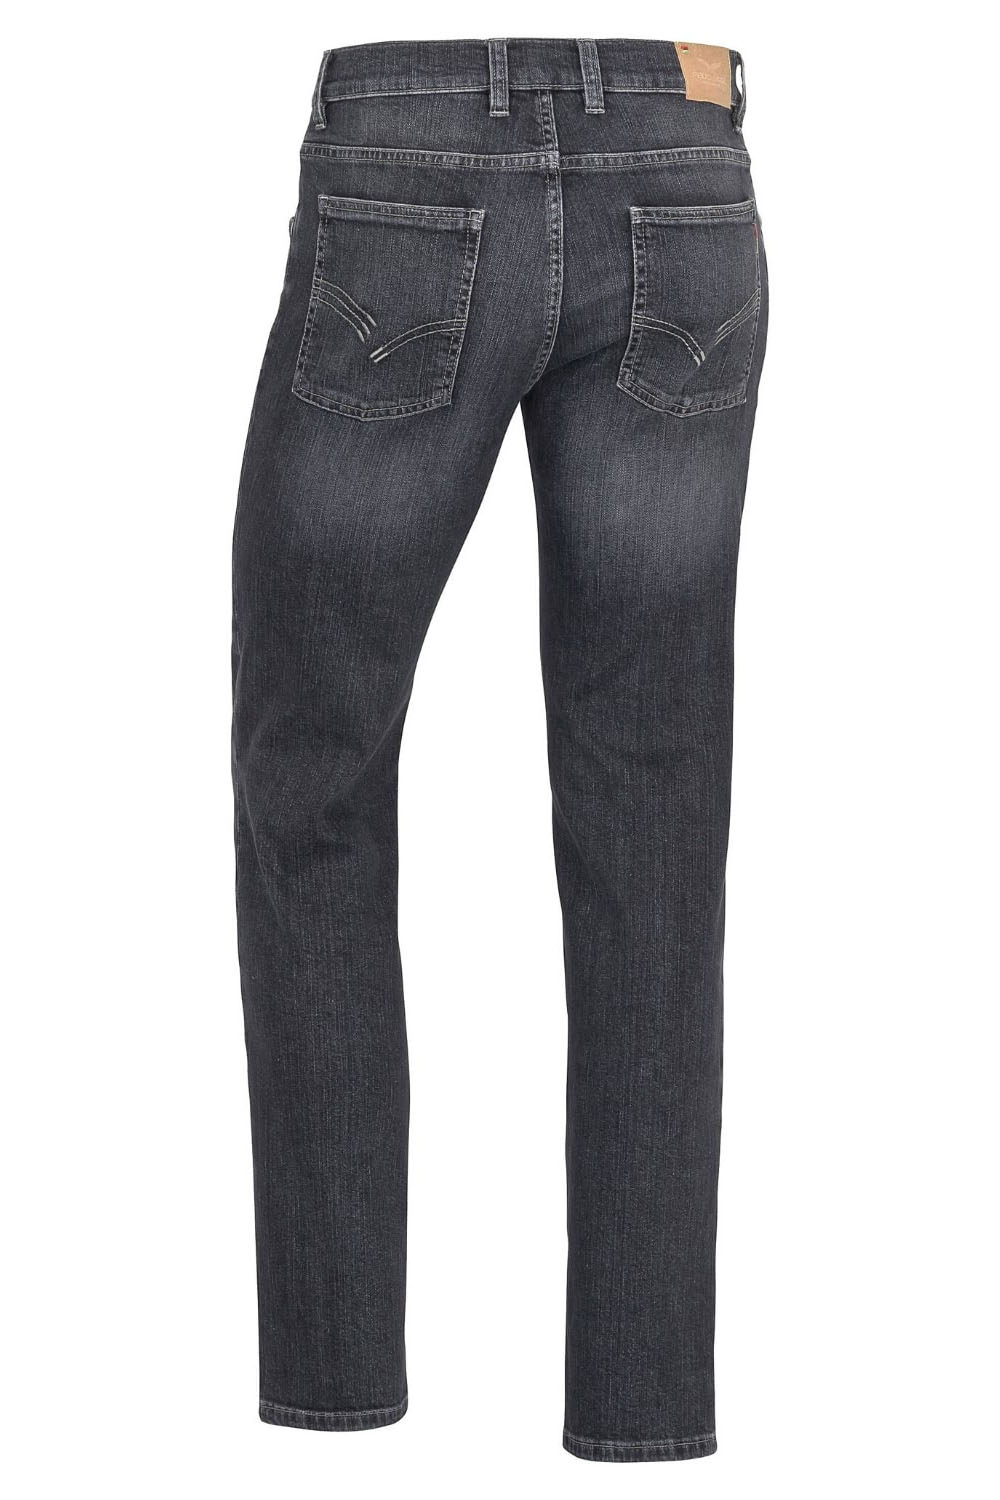 Jeans Finn SlimFit L 32 fashion black